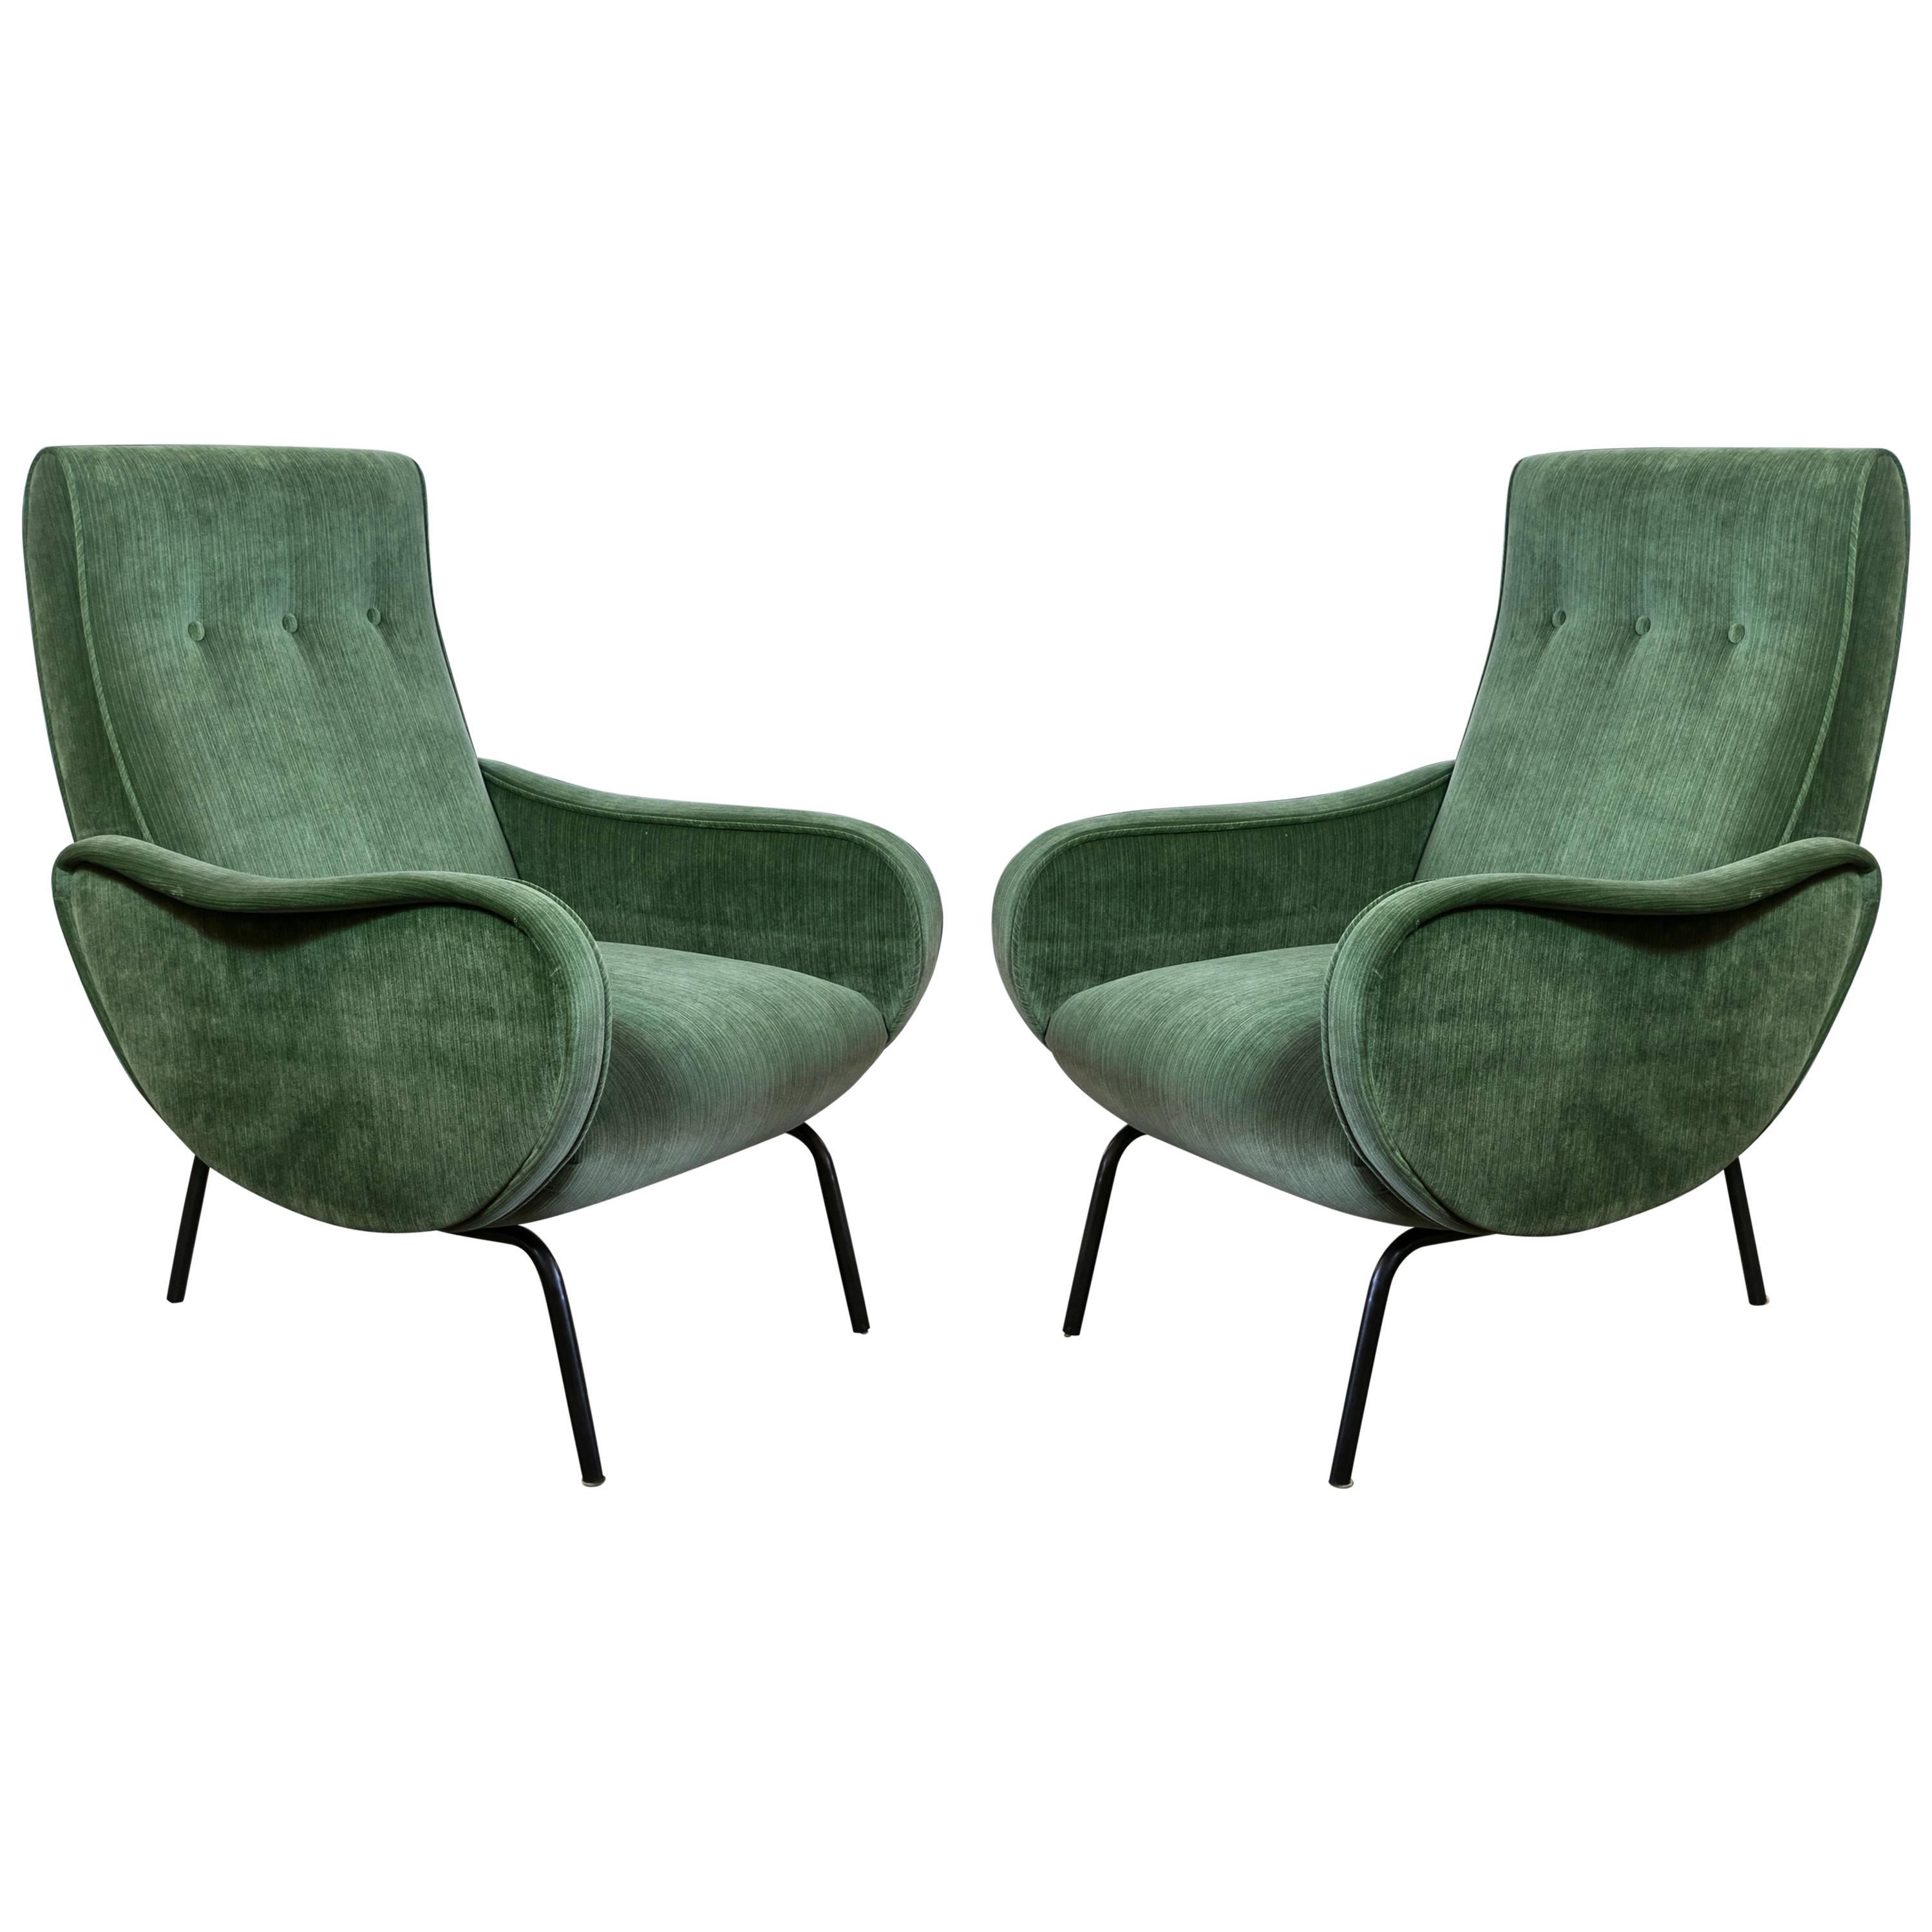 Midcentury Italian Arflex Chairs by Marco Zanuso